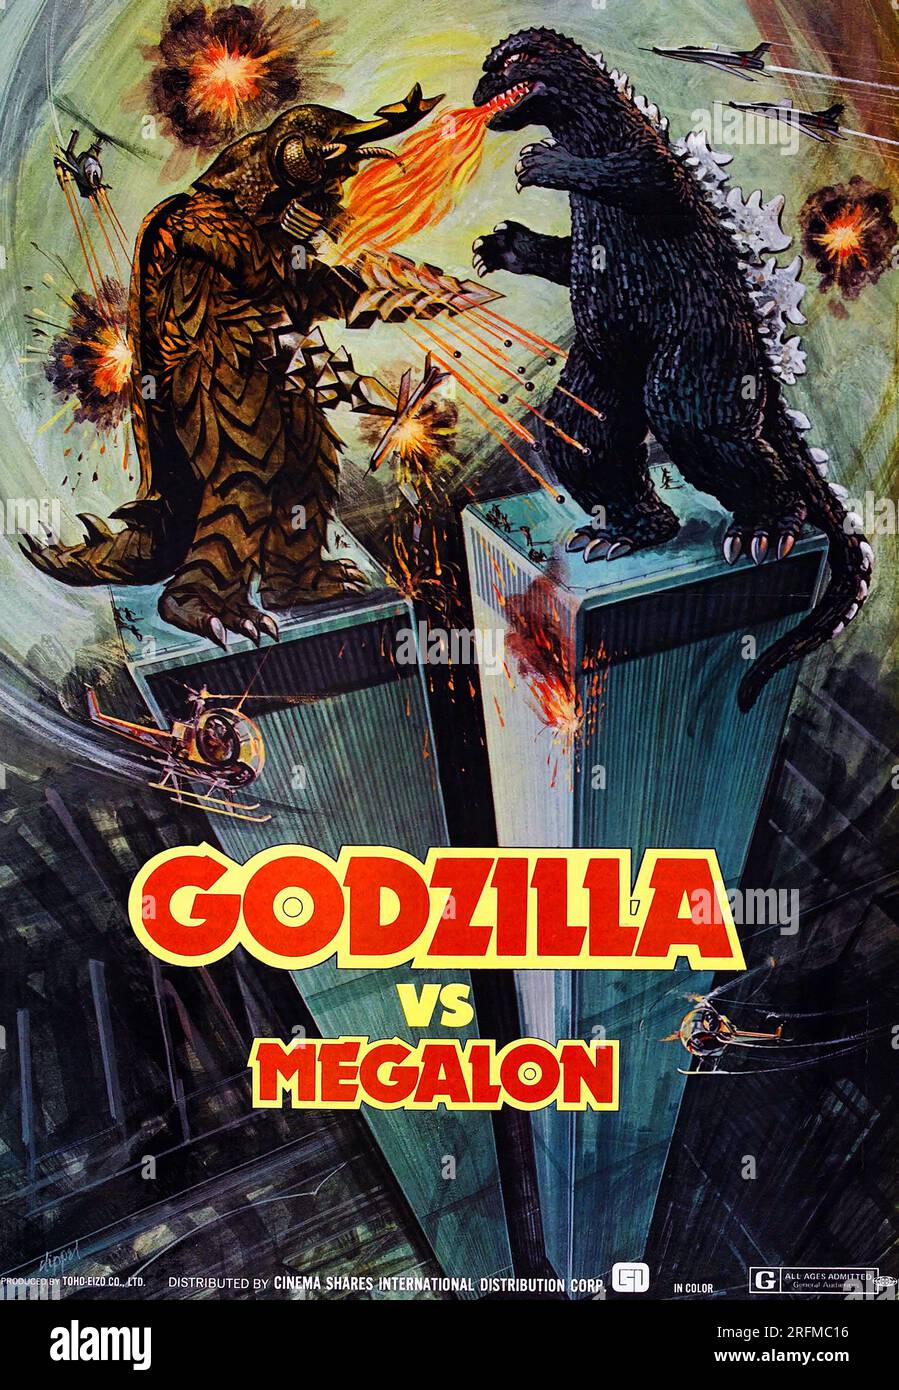 Godzilla vs Megalon' a 1973 Japanese science fiction kaiju film. Stock Photo